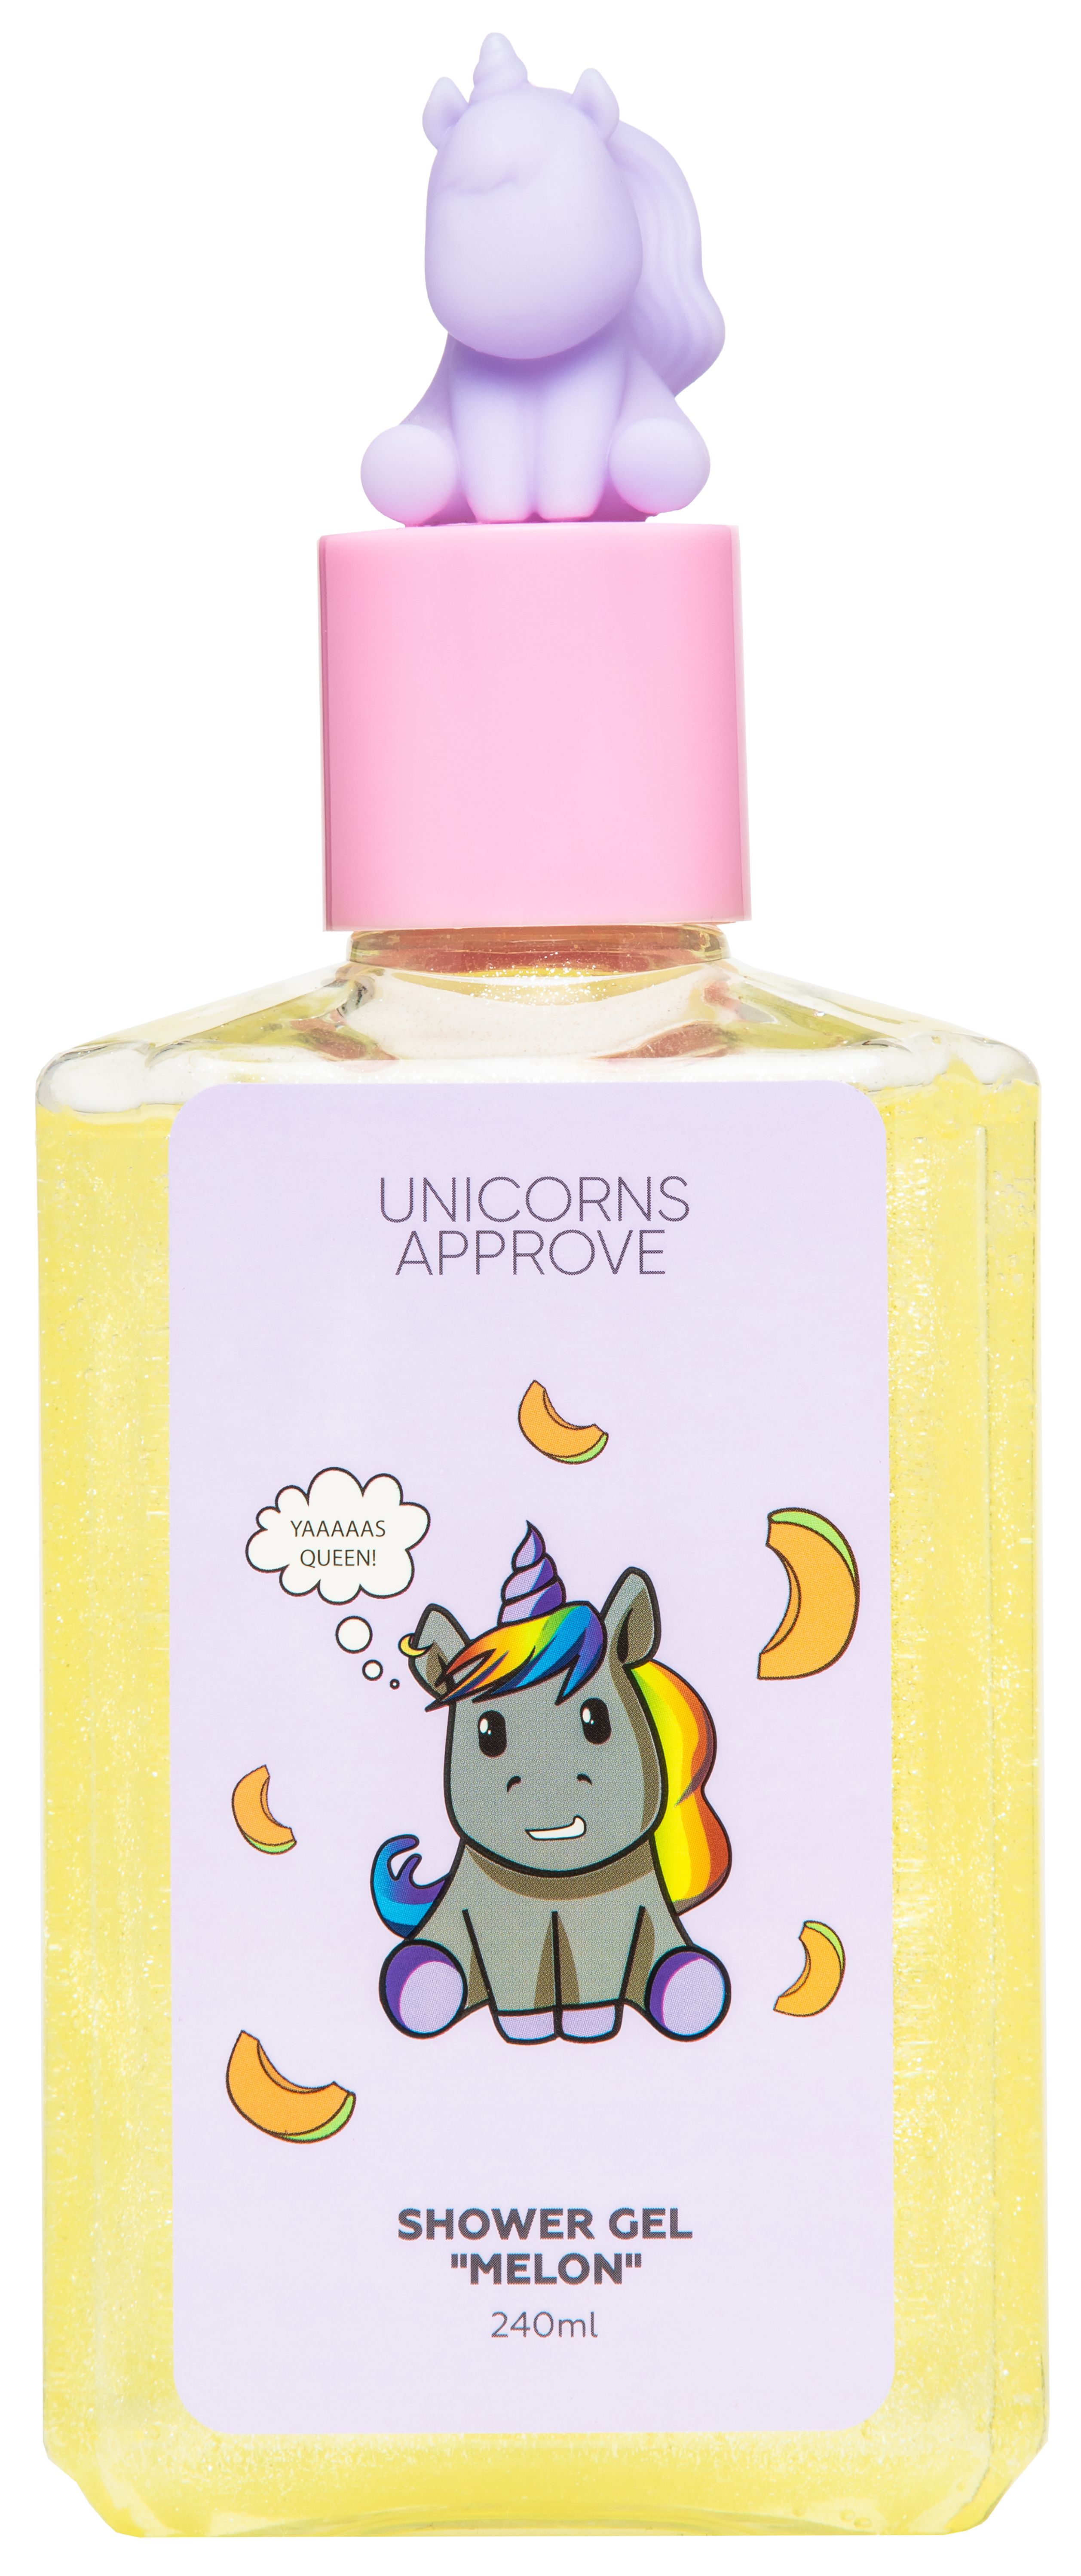 Unicorn гель для душа. Unicorns approve гель для душа. Unicorns approve шампунь. Детская косметика с единорогом из летуаль. Гель для душа с единорогом.